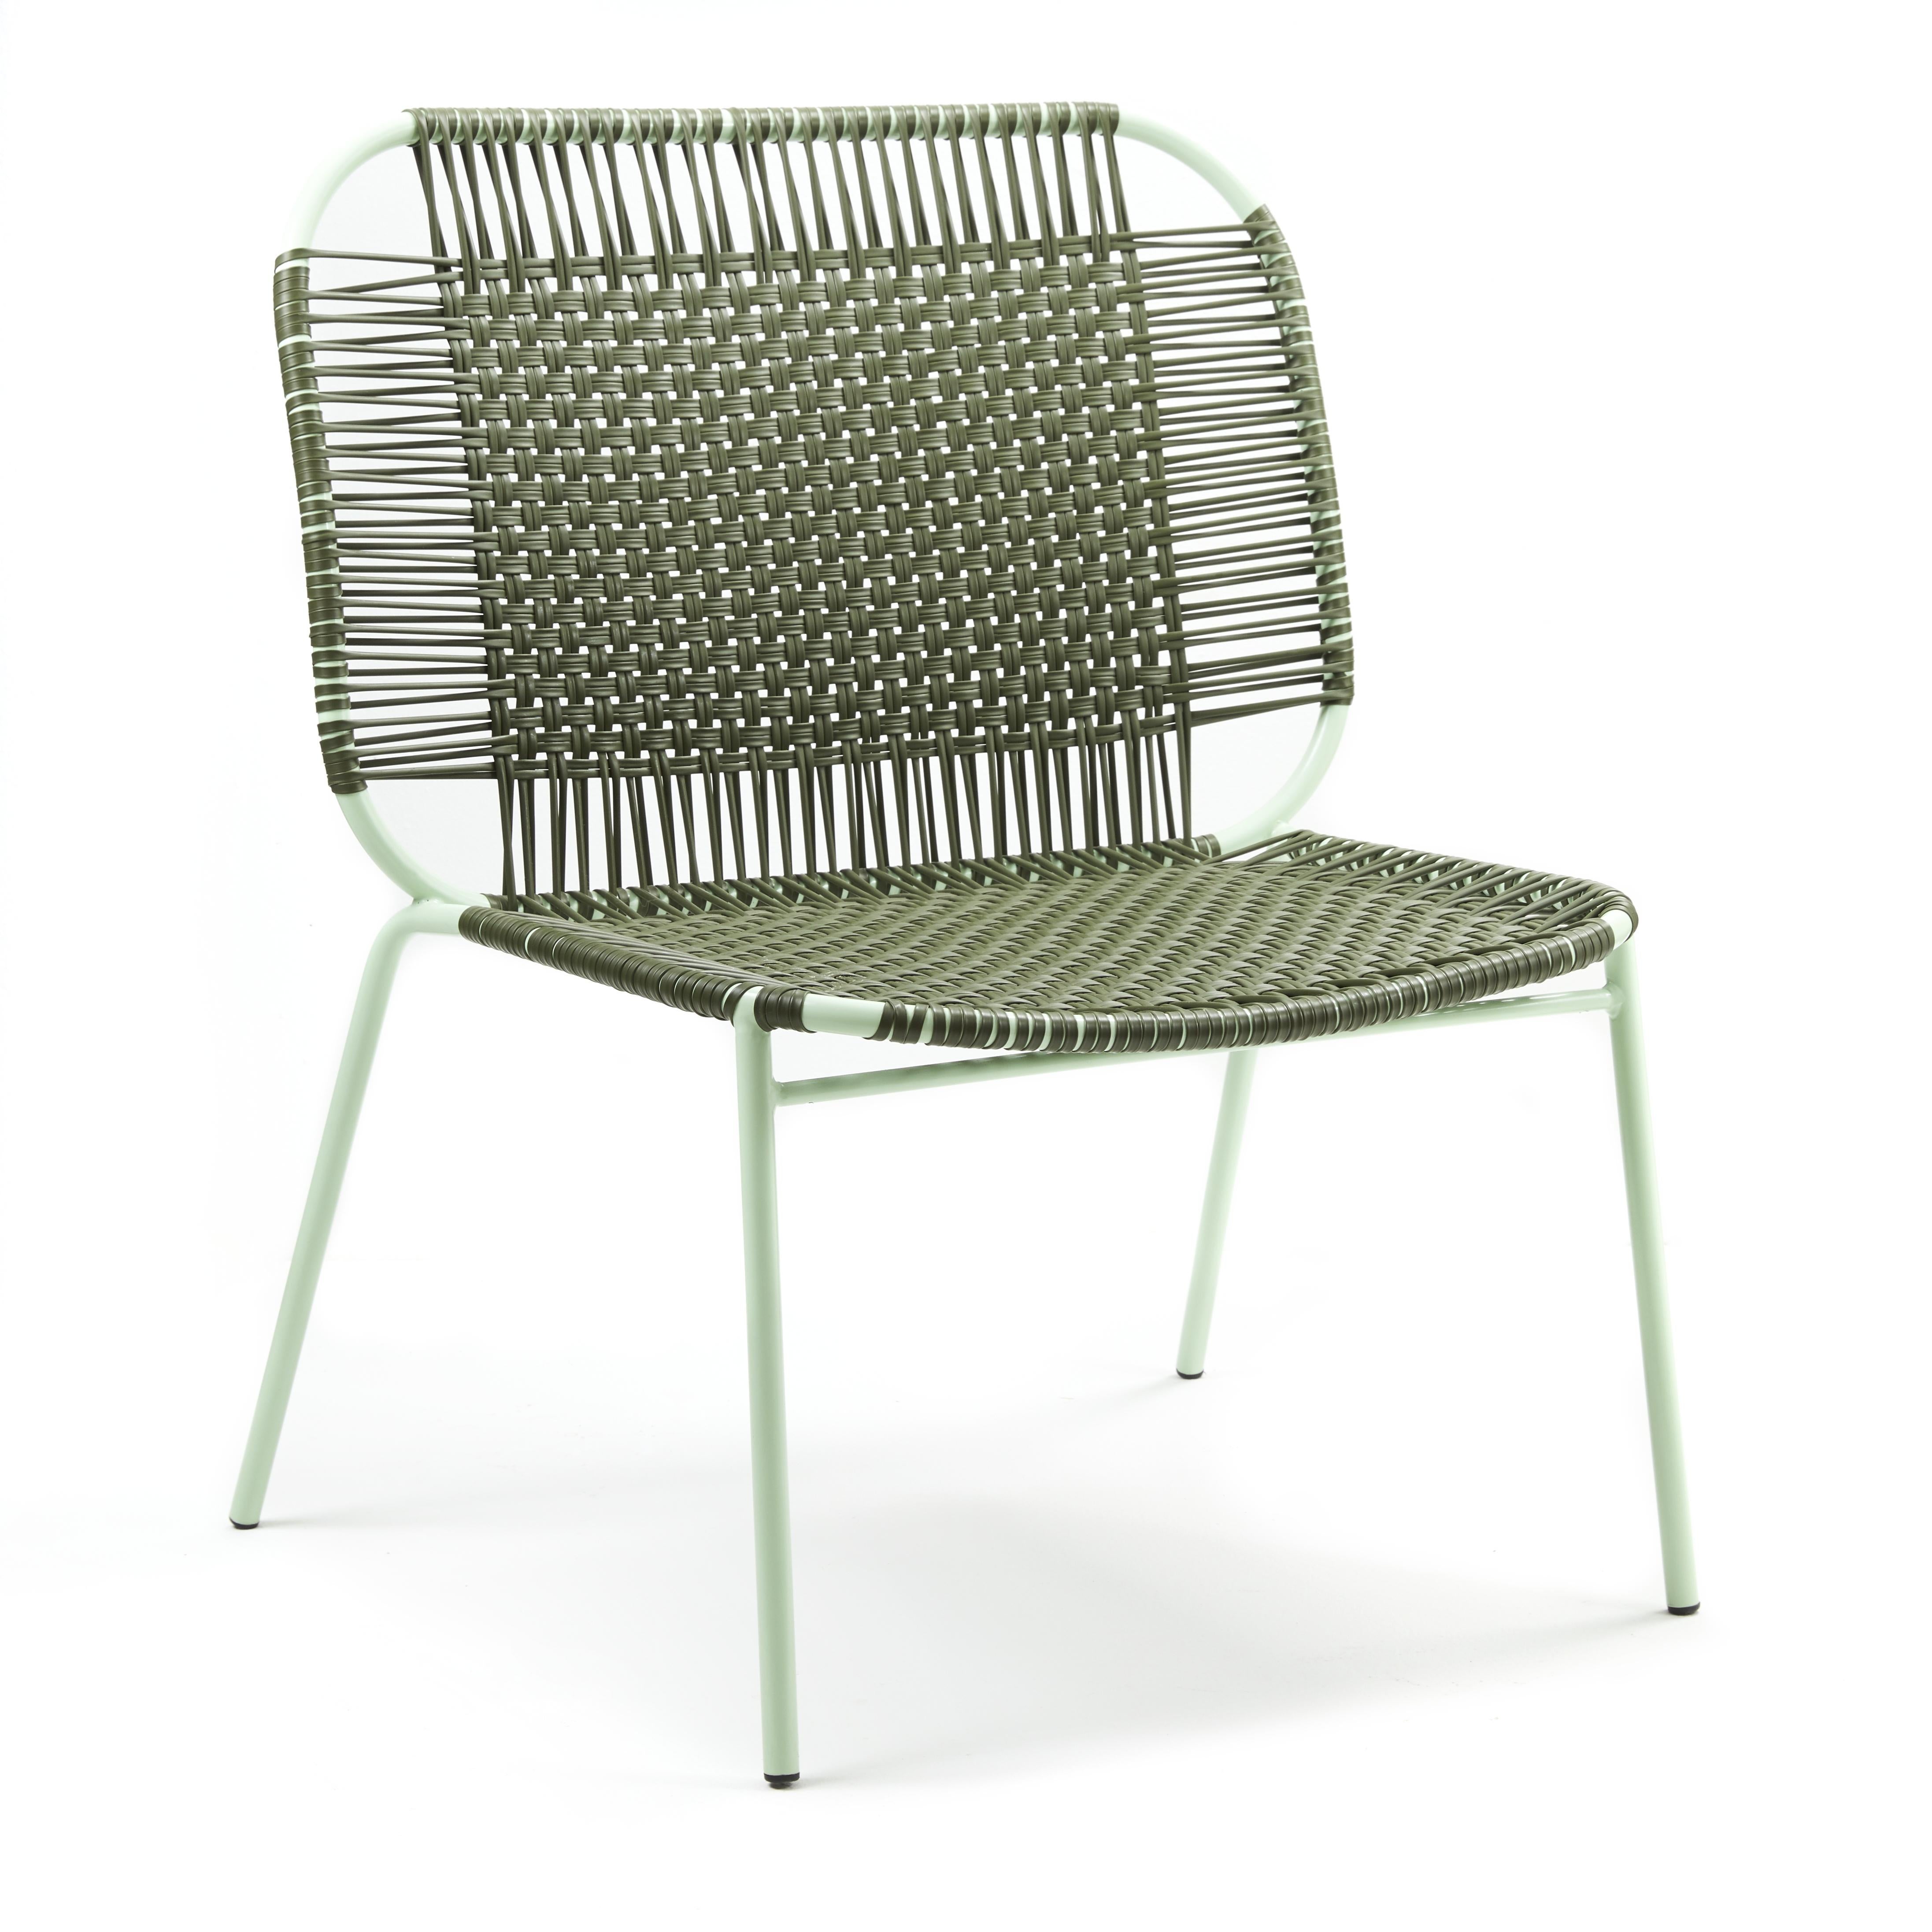 4er-Set olivgrüner Cielo Lounge-Liegestuhl von Sebastian Herkner
MATERIALIEN: Verzinktes und pulverbeschichtetes Stahlrohr. PVC-Schnüre werden aus recyceltem Kunststoff hergestellt.
Technik: Hergestellt aus recyceltem Kunststoff und gewebt von